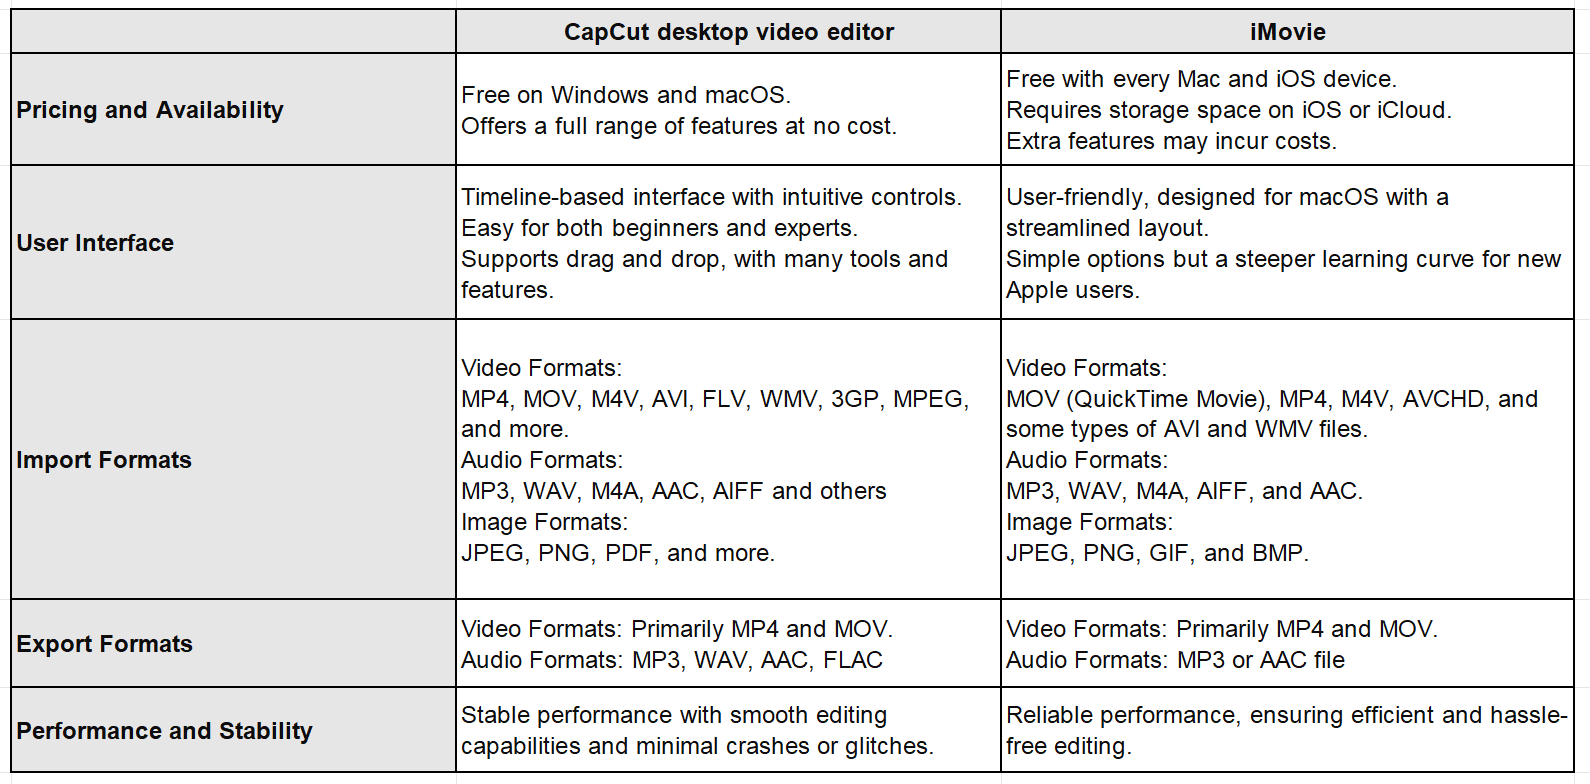 CapCut vs iMovie on Mac: Detailed comparison